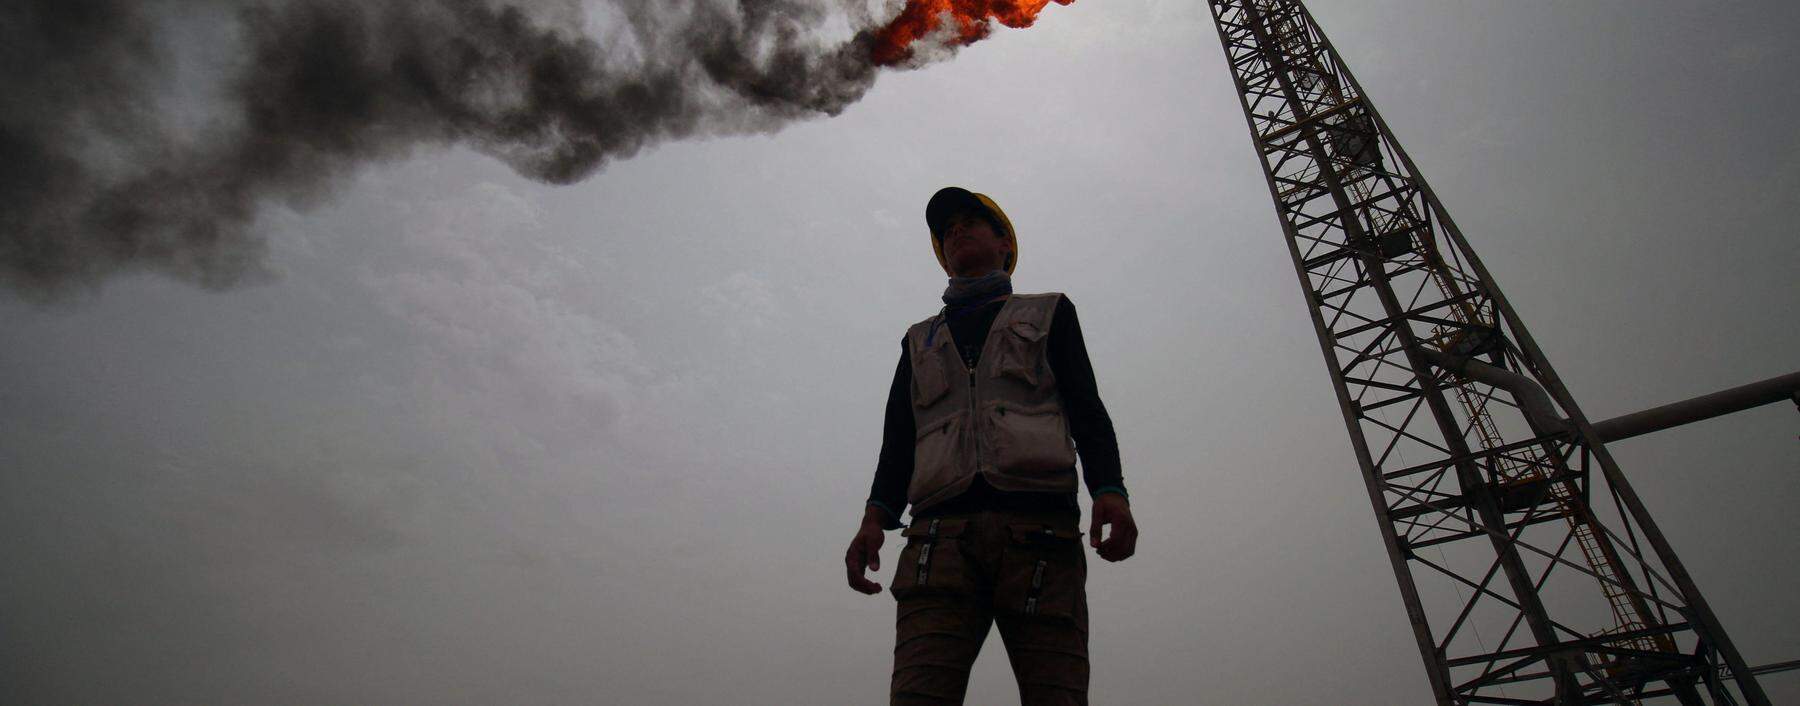 Öl und Gas waren jahrzehntelang der Grund für kriegerische Konflikte im Nahen Osten. Wird sich das in einer „grünen“ Energiezukunft ändern?